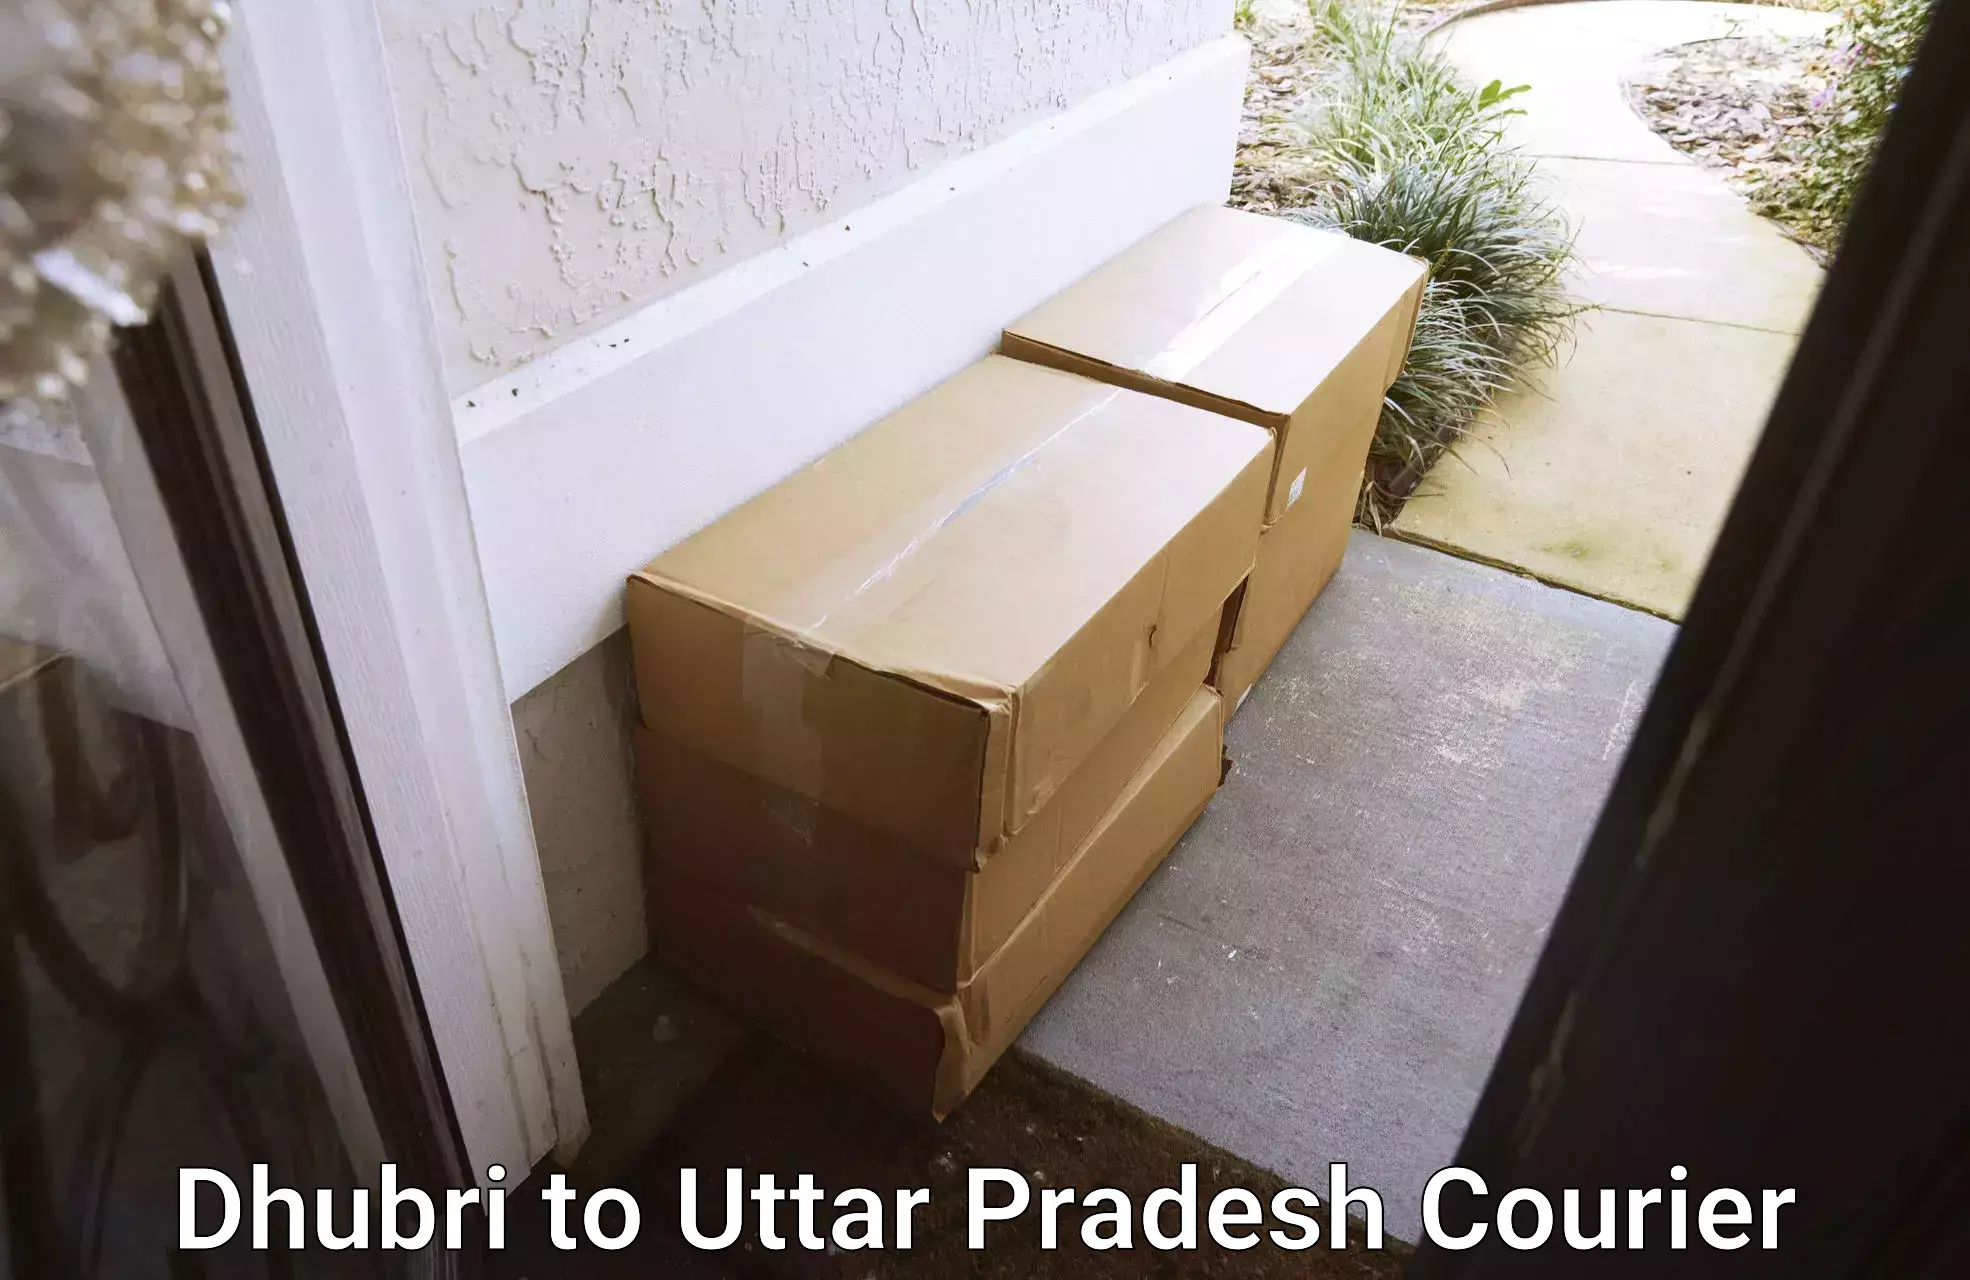 Efficient parcel tracking Dhubri to Sikriganj